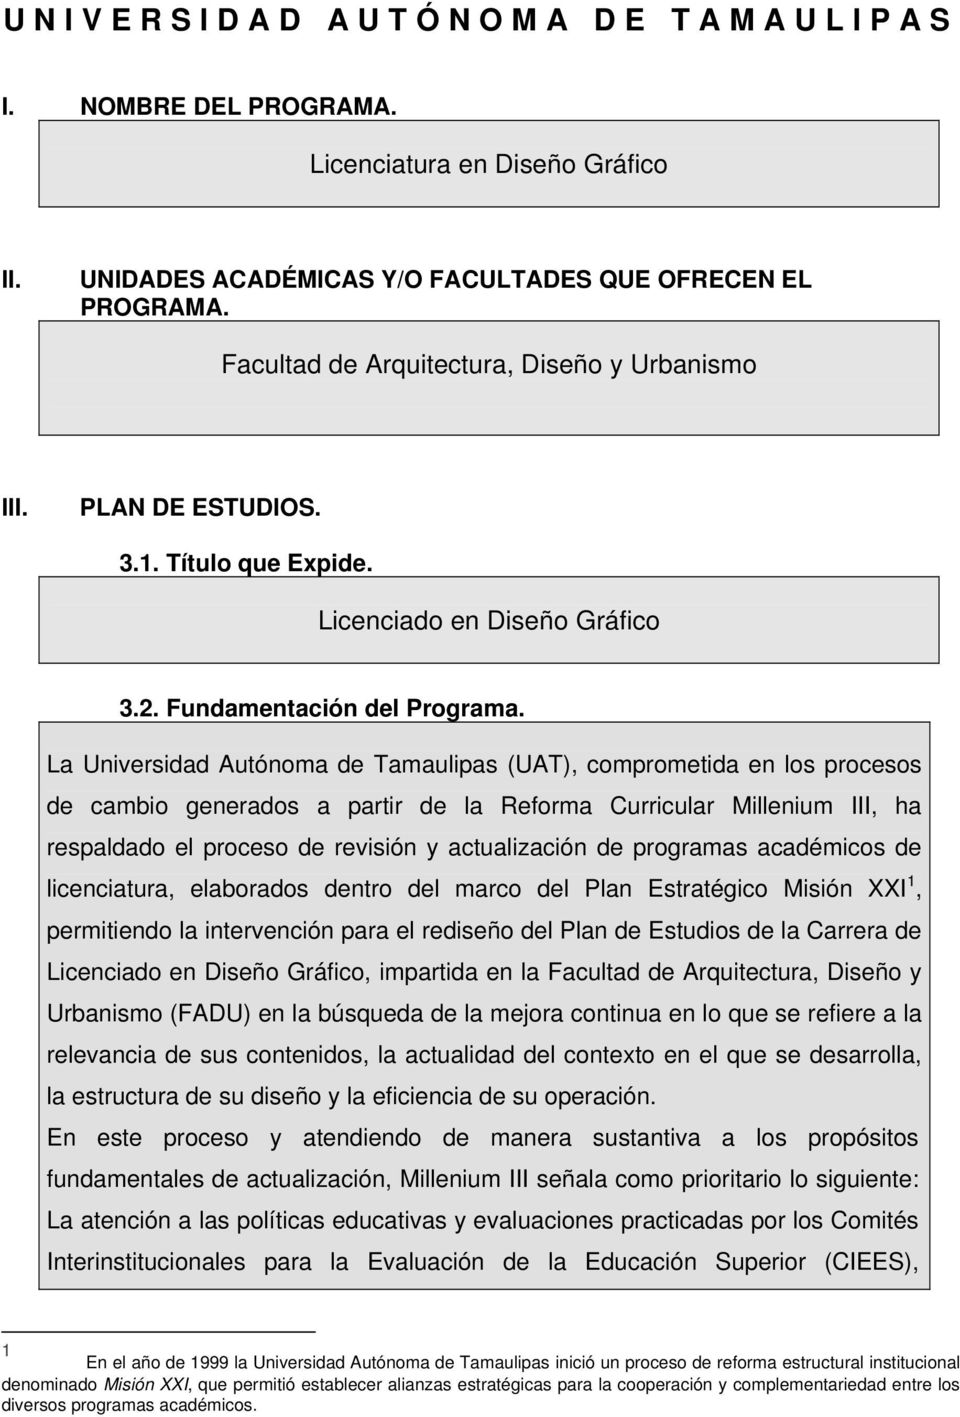 La Universidad Autónoma de Tamaulipas (UAT), comprometida en los procesos de cambio generados a partir de la Reforma Curricular Millenium III, ha respaldado el proceso de revisión y actualización de